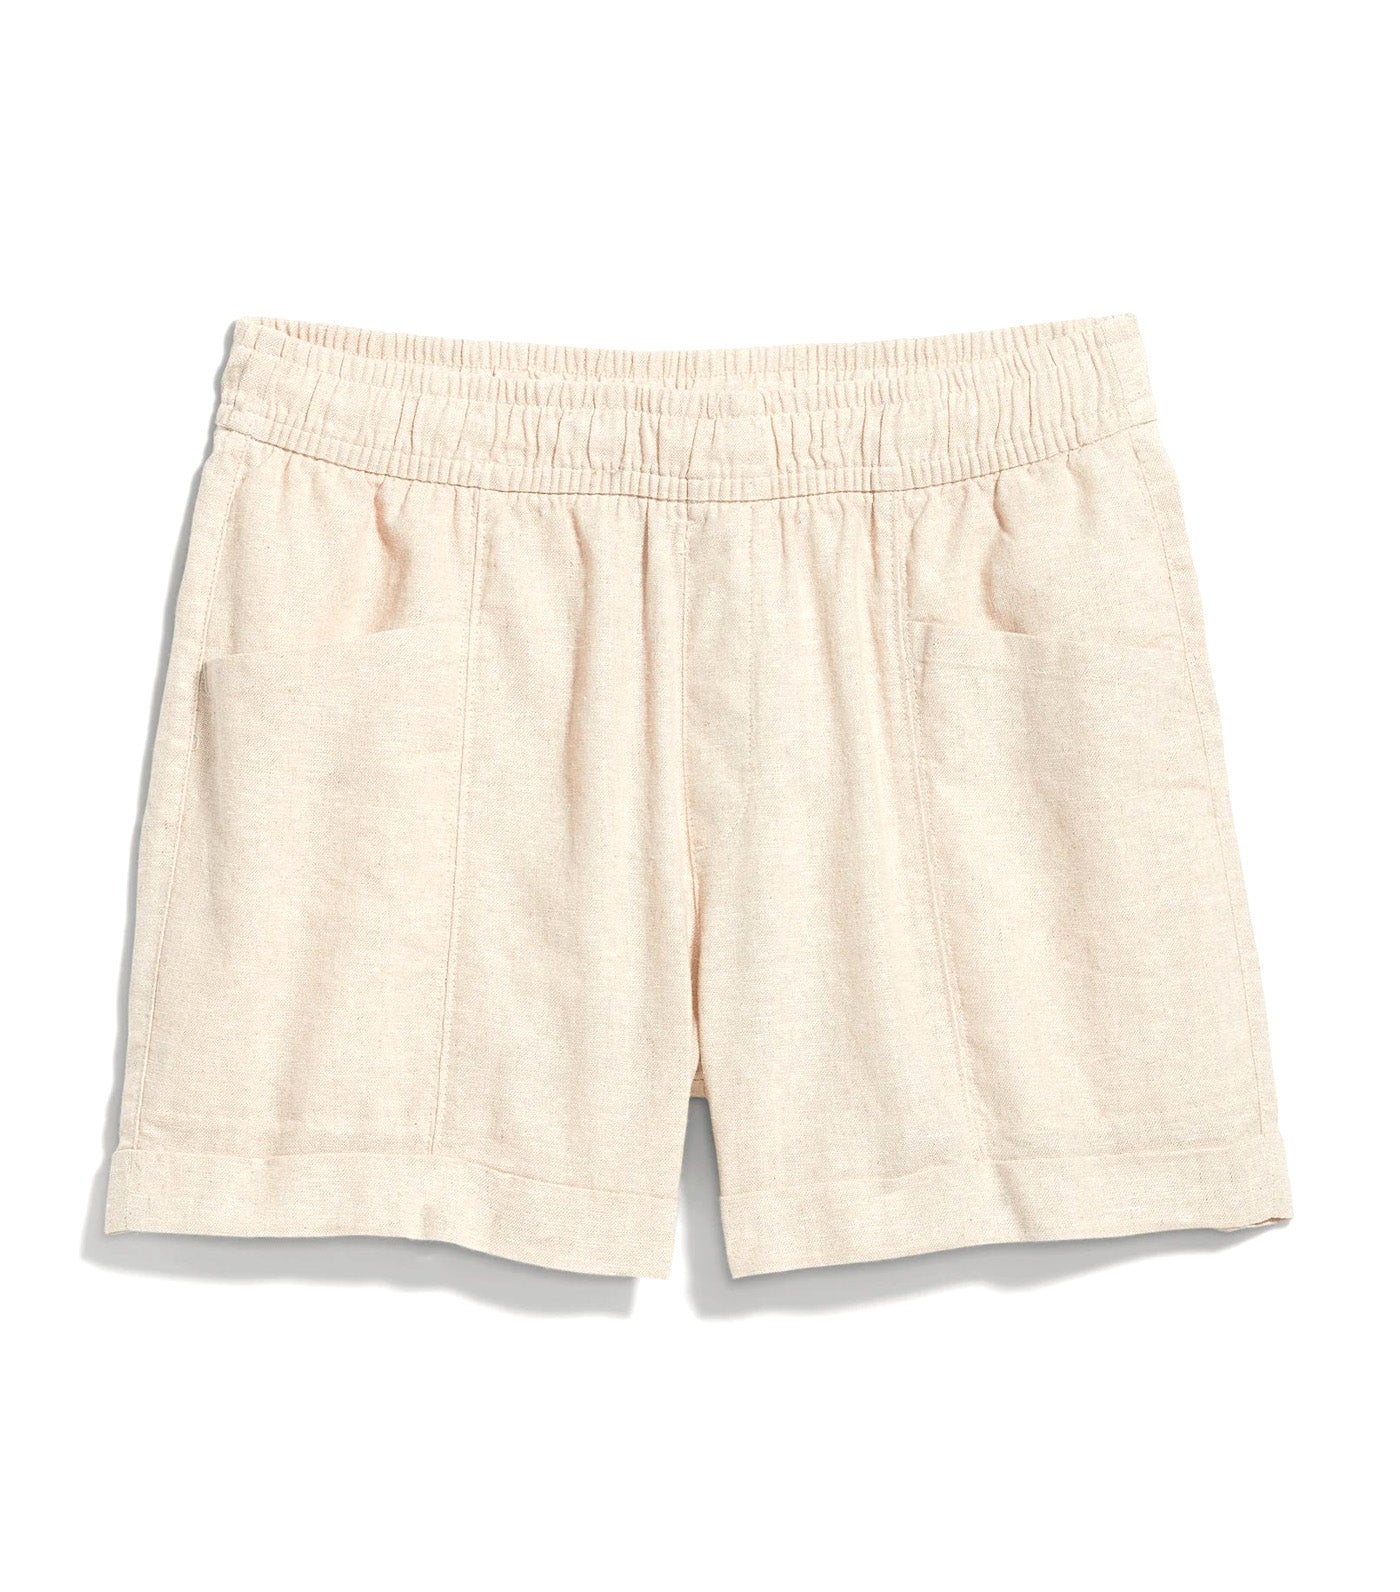 High-Waisted Linen-Blend Utility Shorts for Women 3.5-Inch Inseam Flax Linen